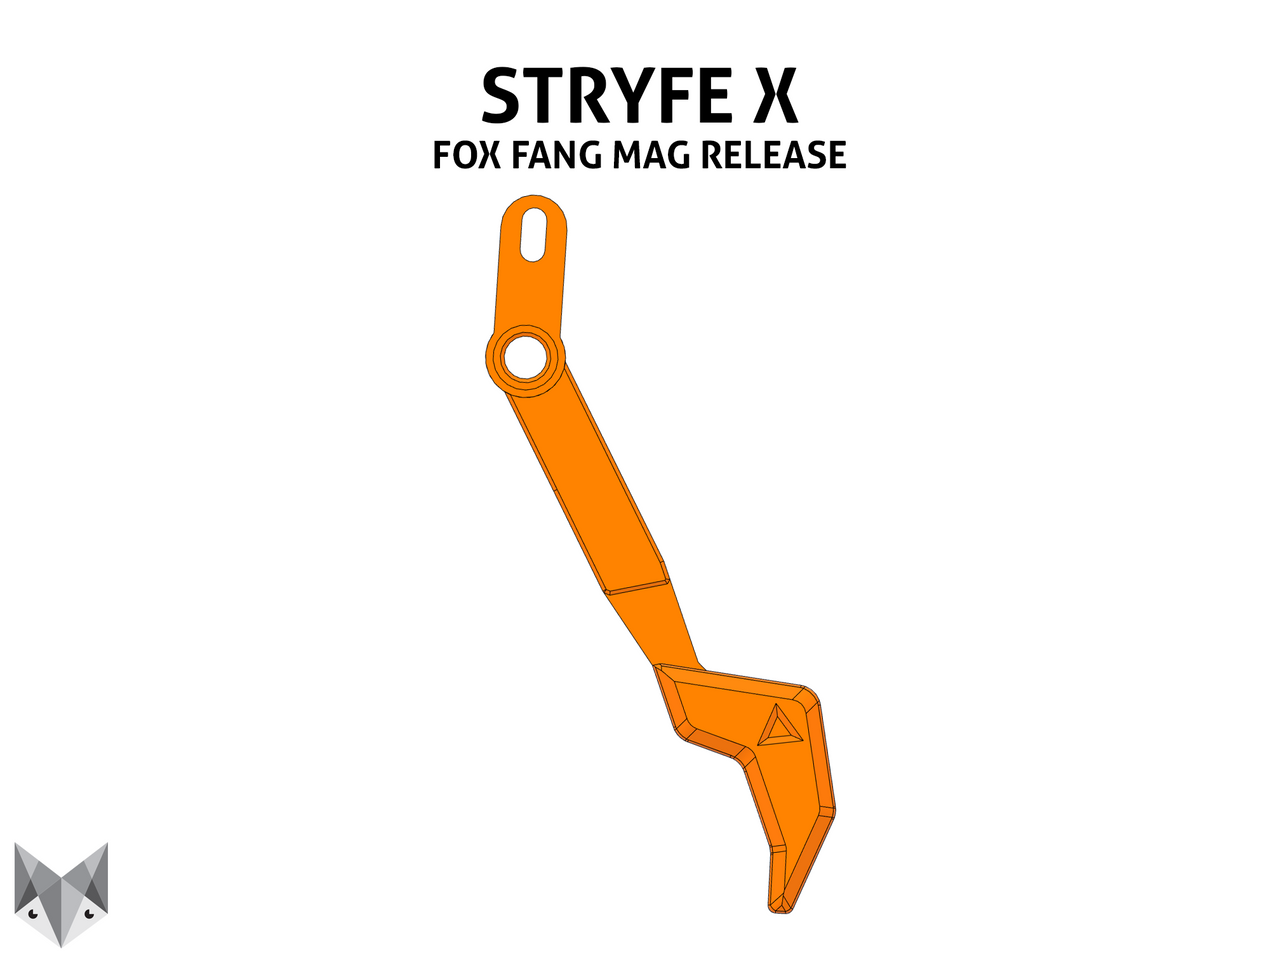 Stryfe X Fox Fang Magazine Release